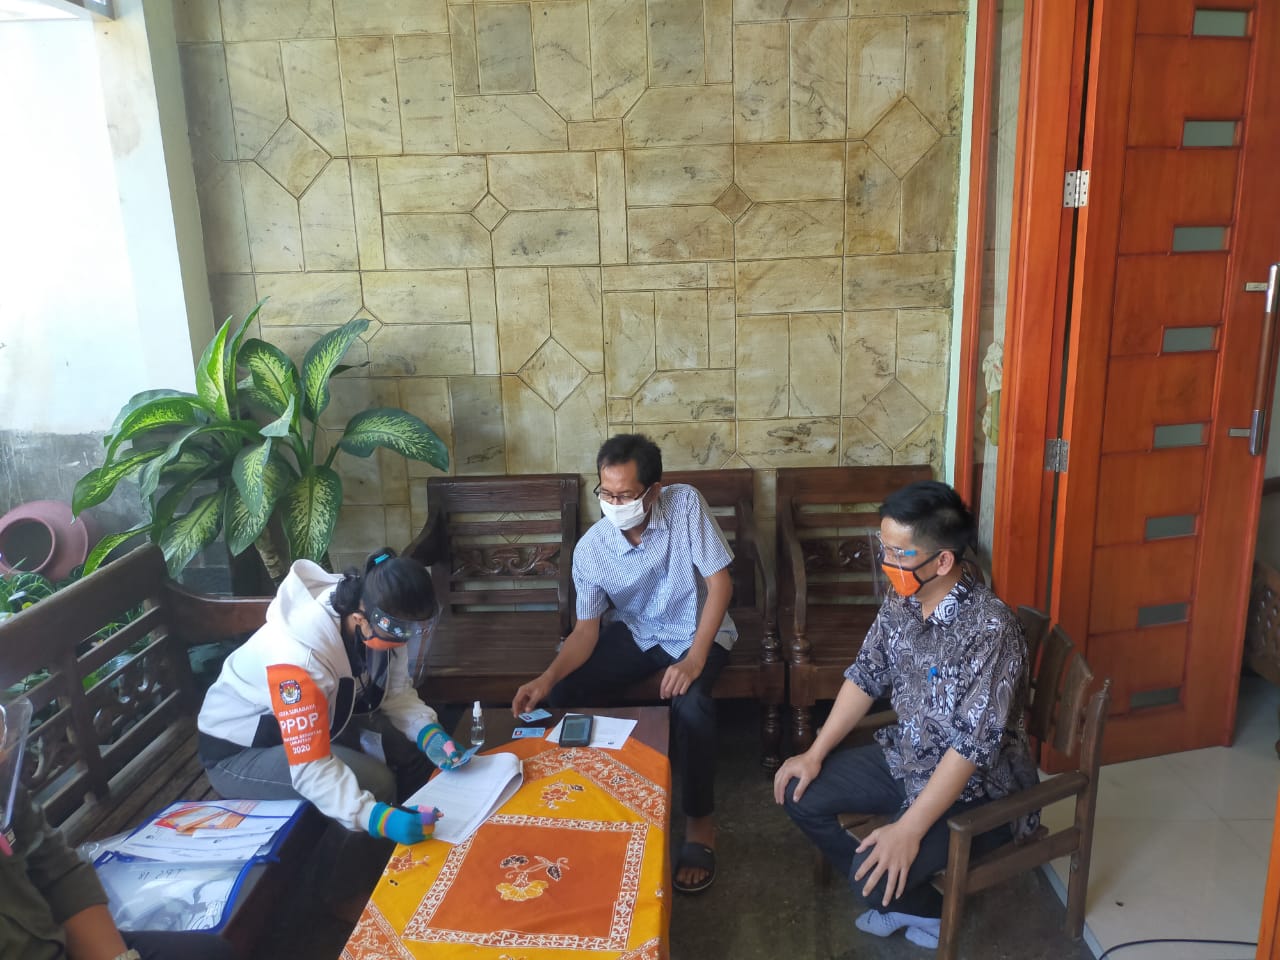 Ketua DPRD : Warga Surabaya yang Penuhi Syarat, Harus Tercatat Pemilih dalam Pilkada